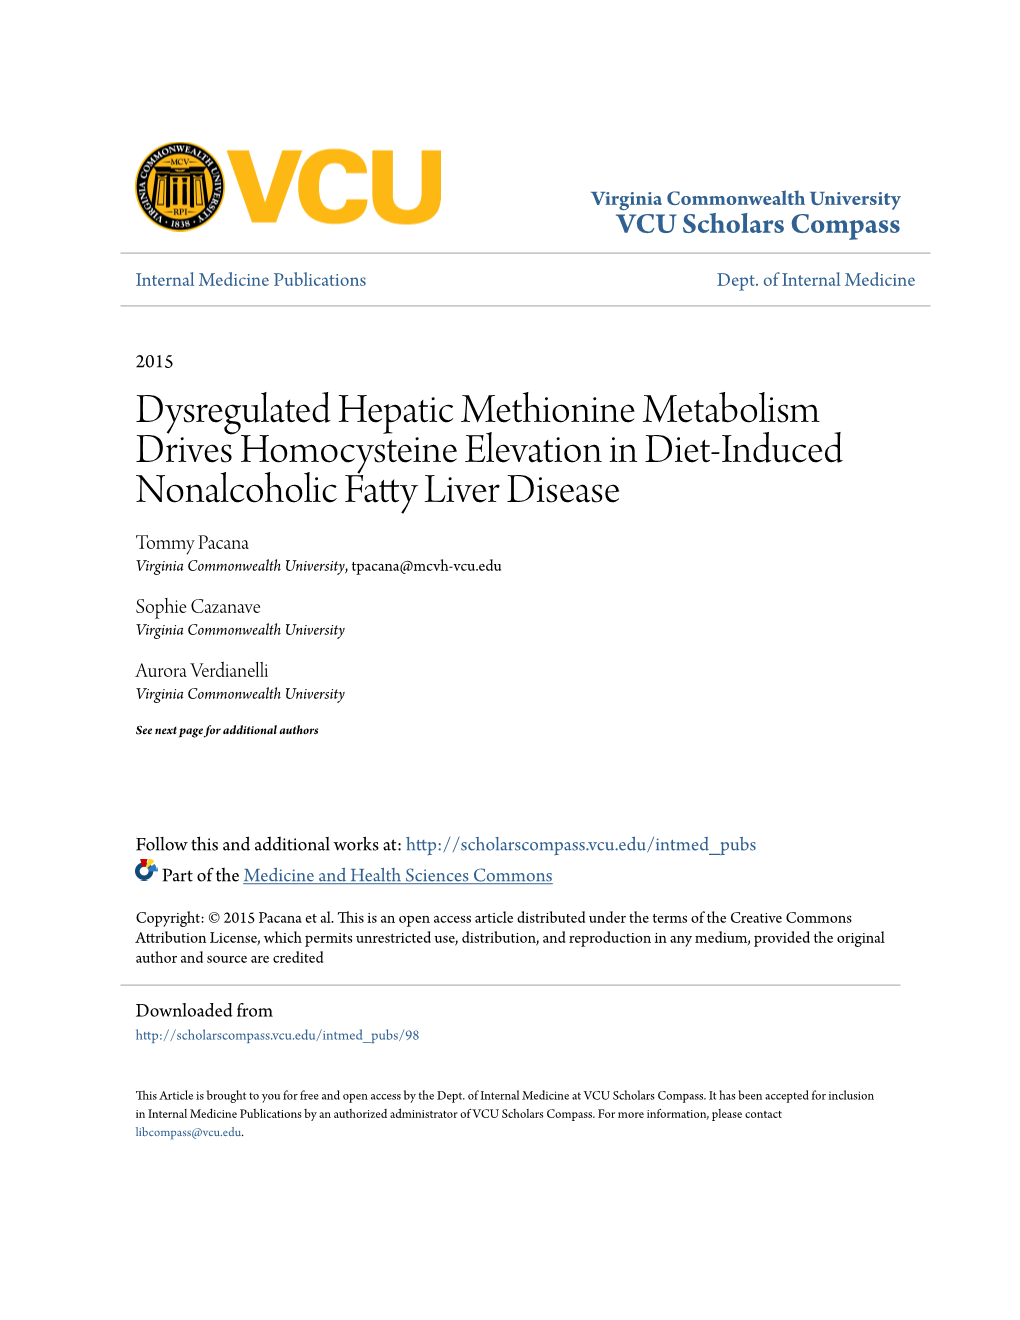 Dysregulated Hepatic Methionine